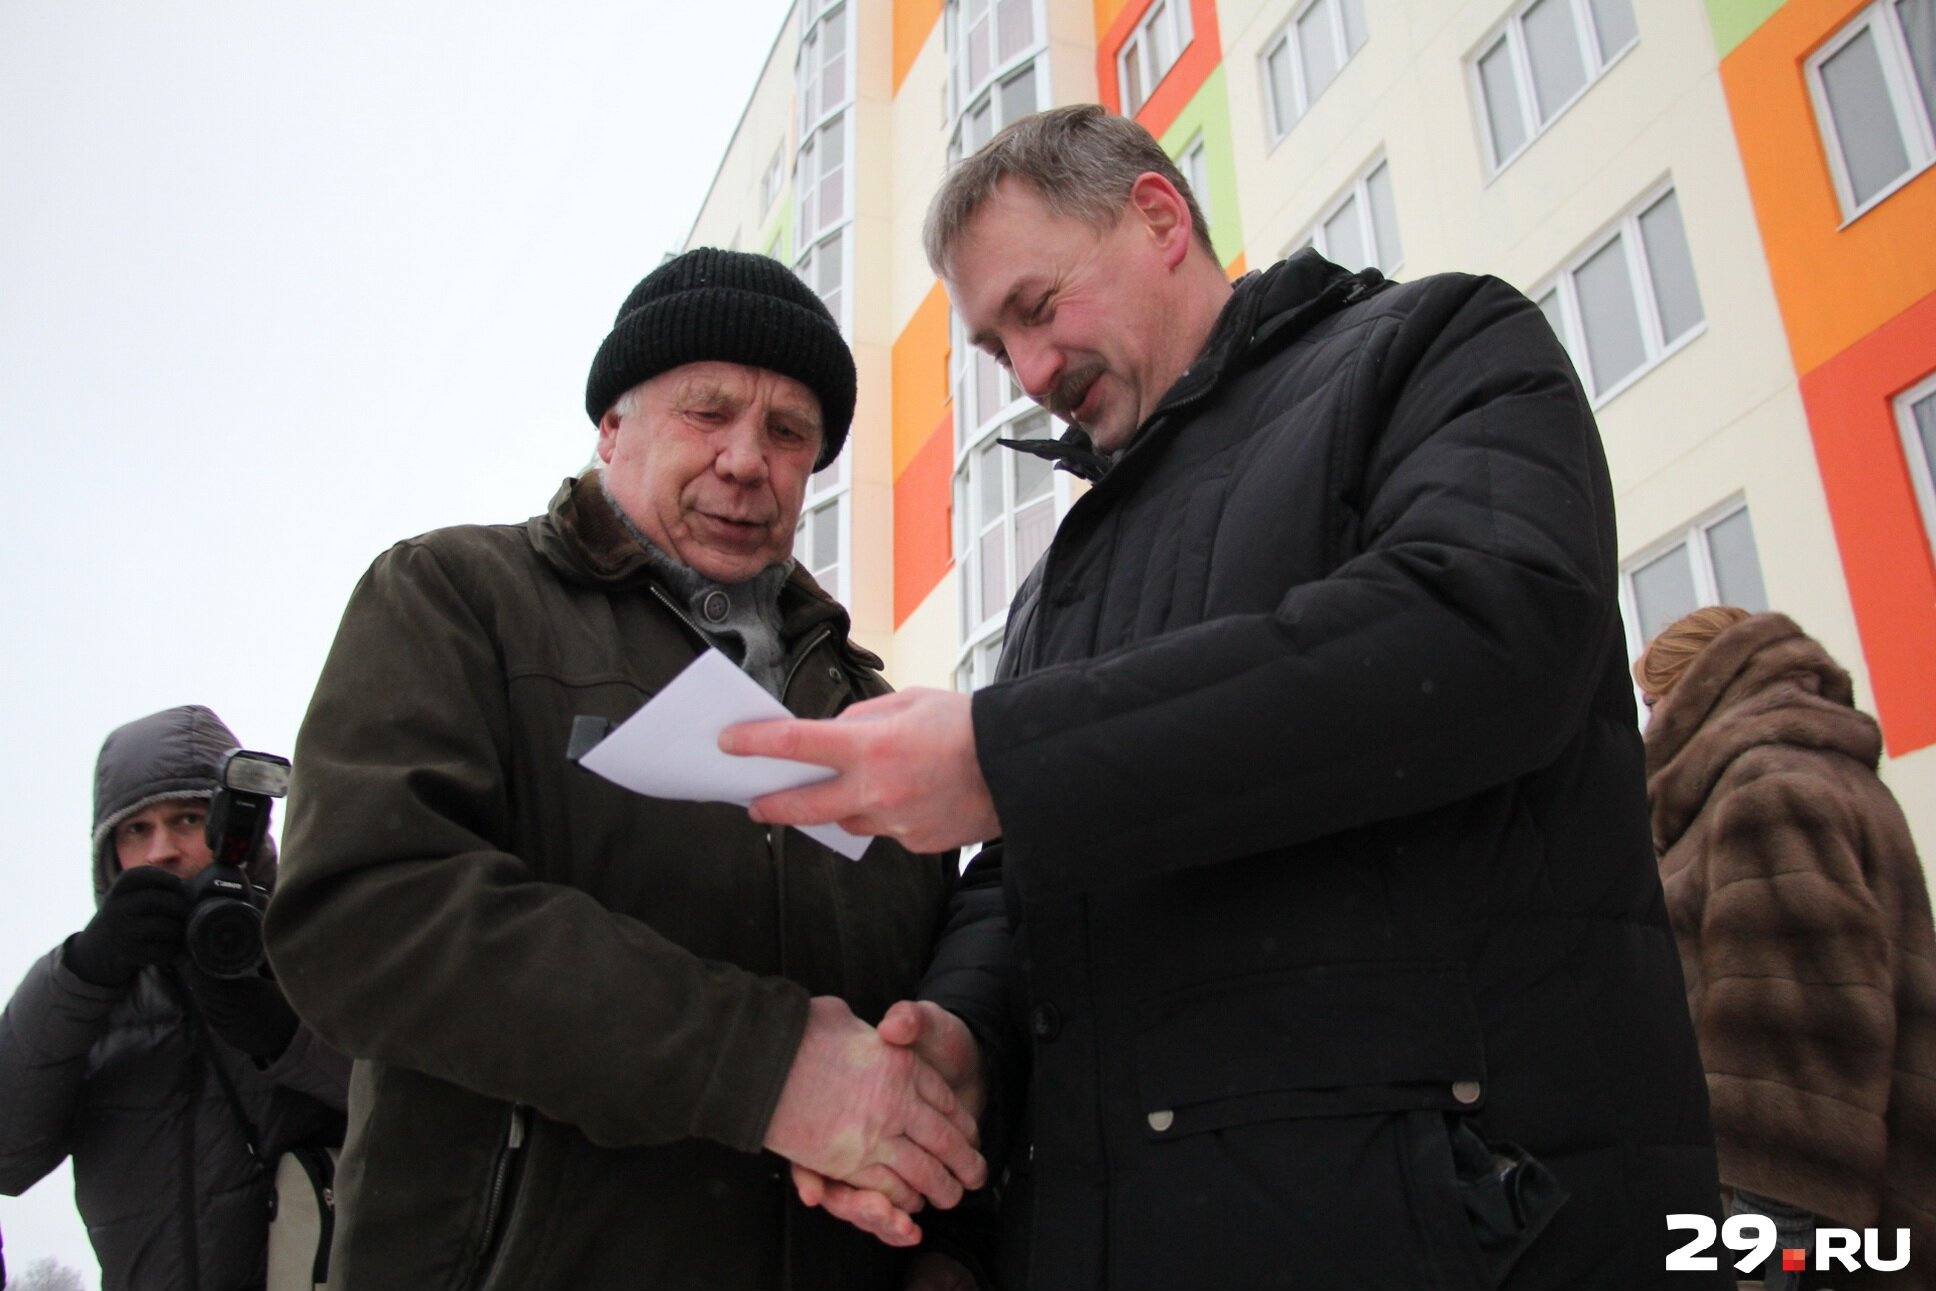 Глава Архангельска Игорь Годзиш заявил, что надеется на то, что программа по переселению на этом не закончится